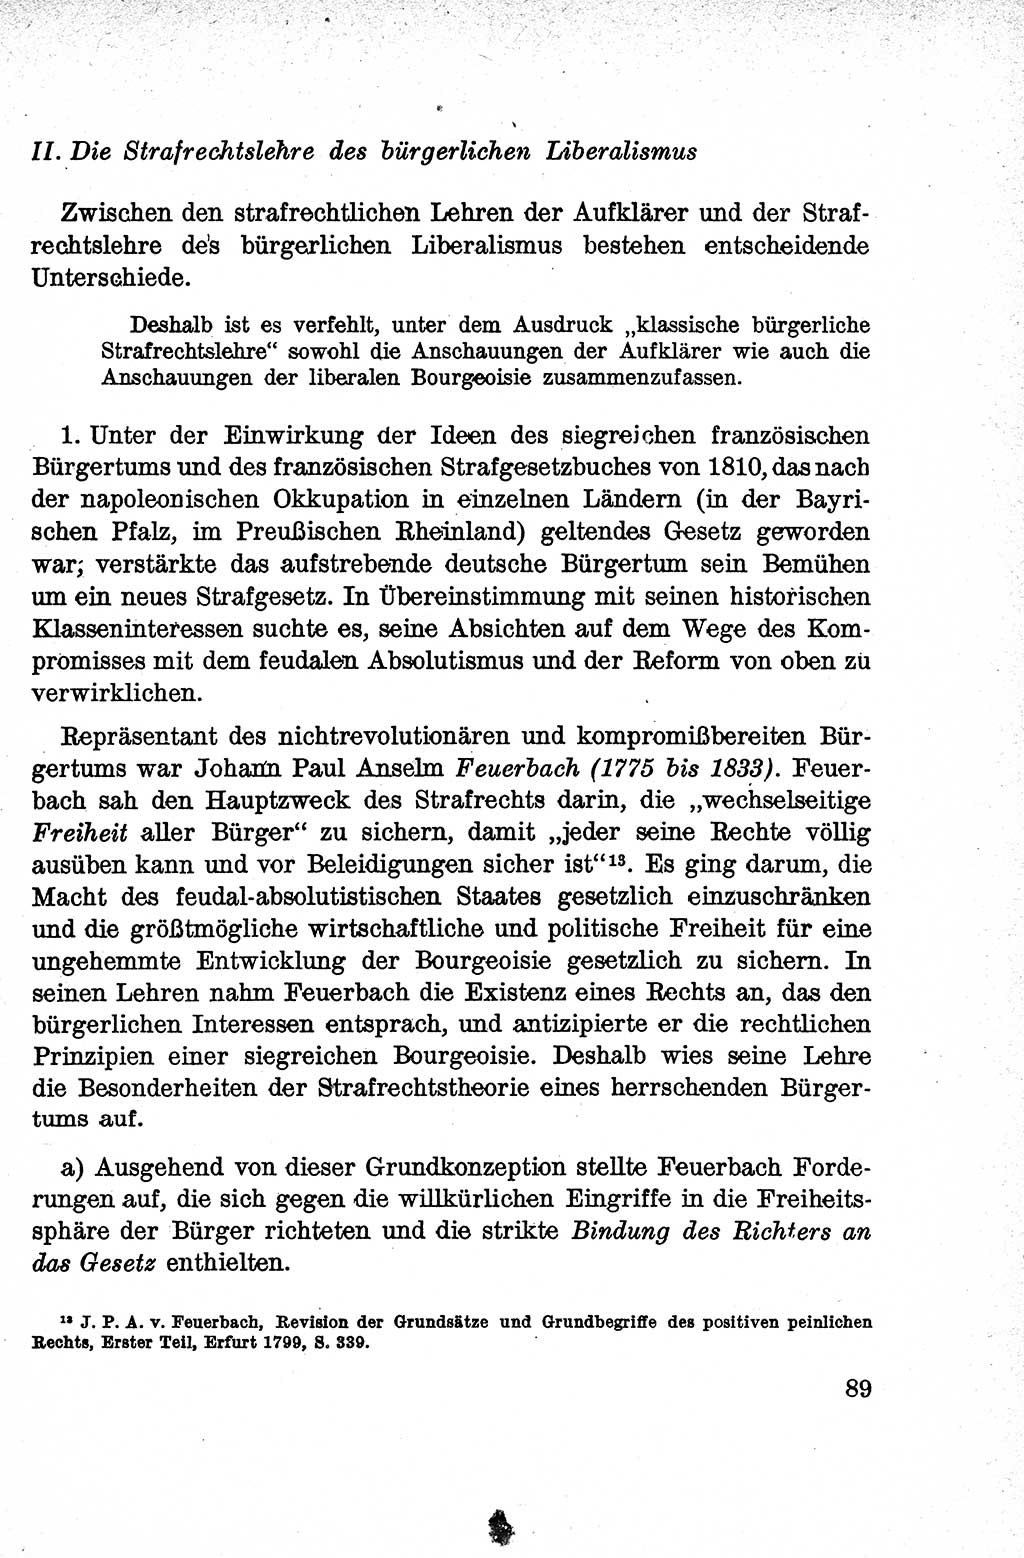 Lehrbuch des Strafrechts der Deutschen Demokratischen Republik (DDR), Allgemeiner Teil 1959, Seite 89 (Lb. Strafr. DDR AT 1959, S. 89)